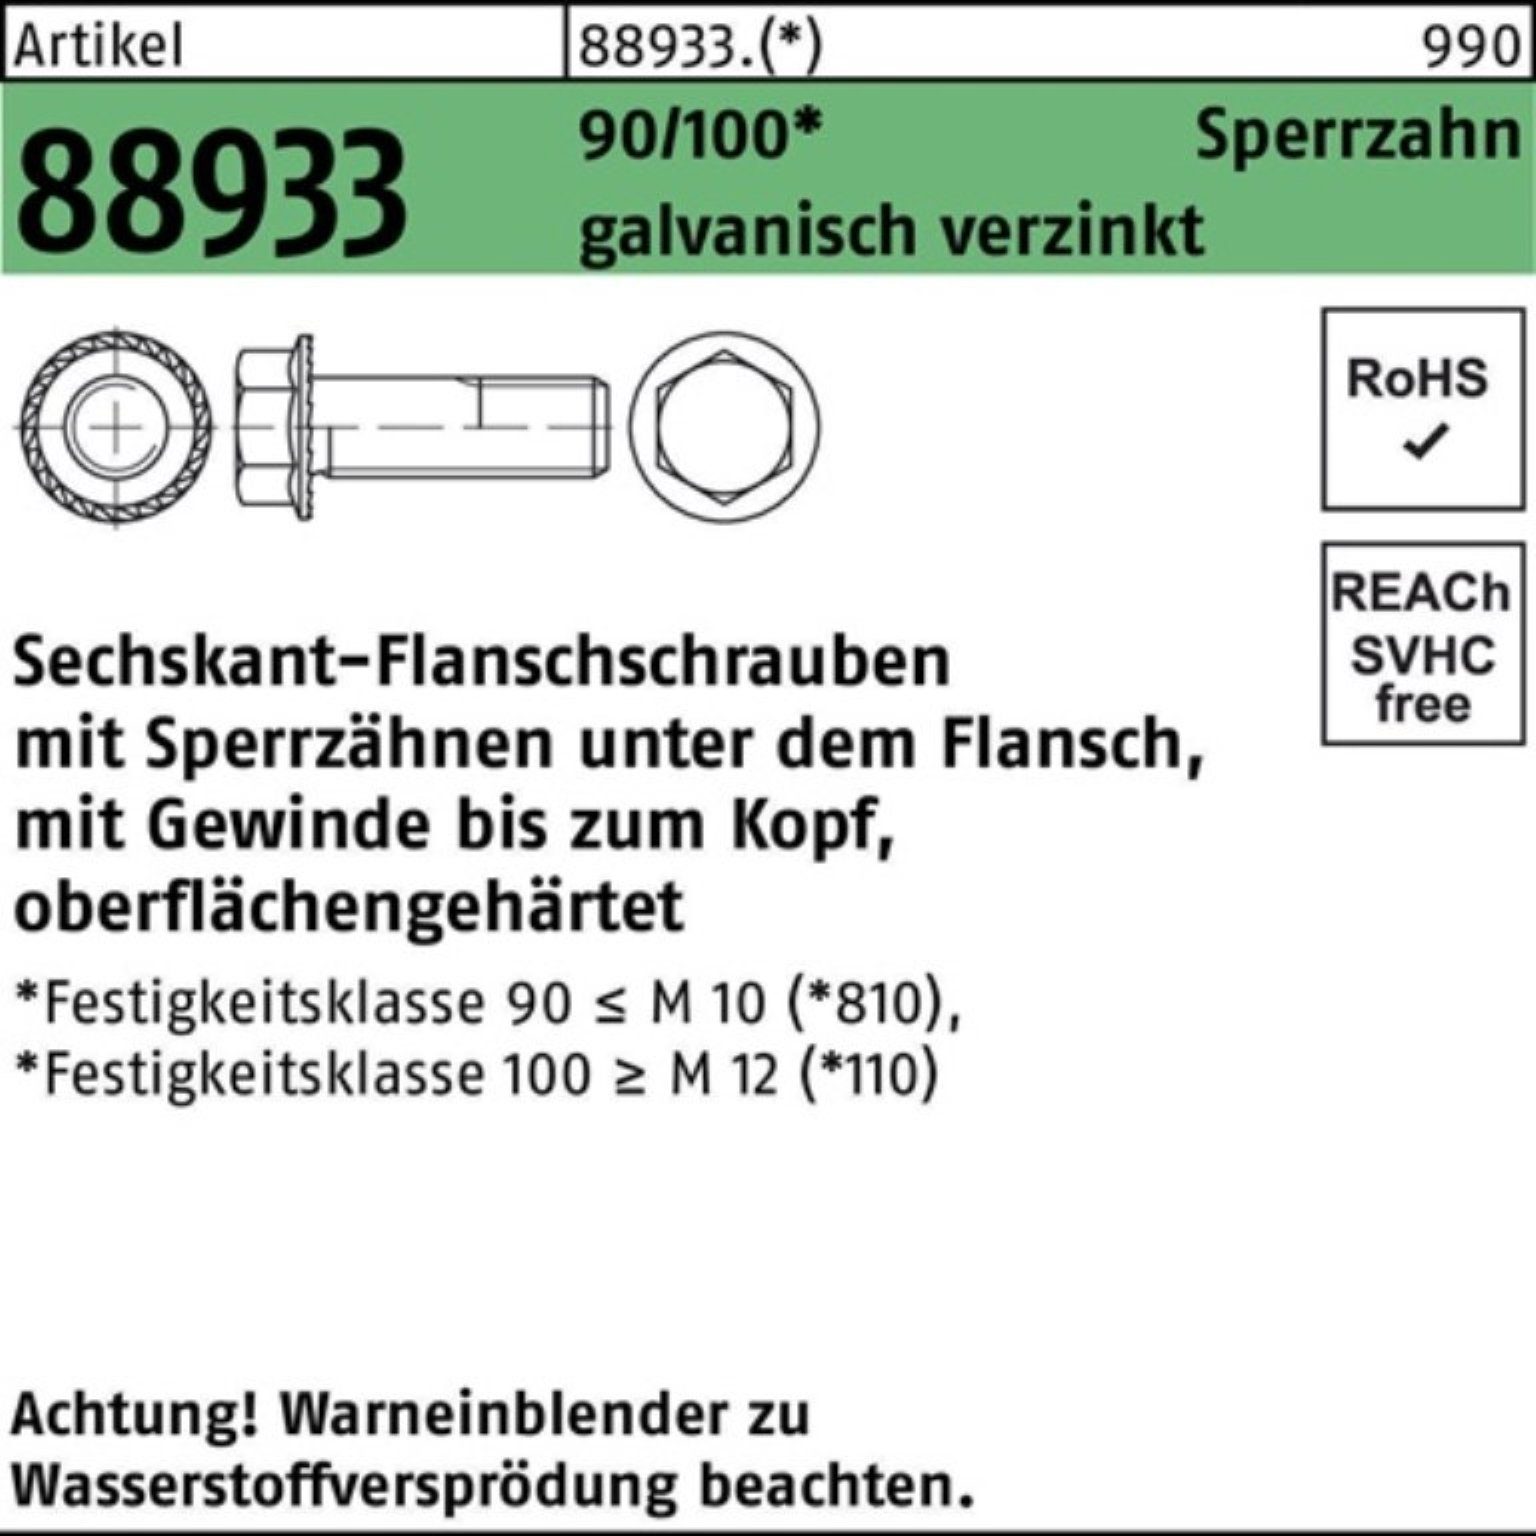 VG Sechskantflanschschraube 90/100 Pack Schraube R 88933 Reyher ga M5x16 Sperrz. 500er